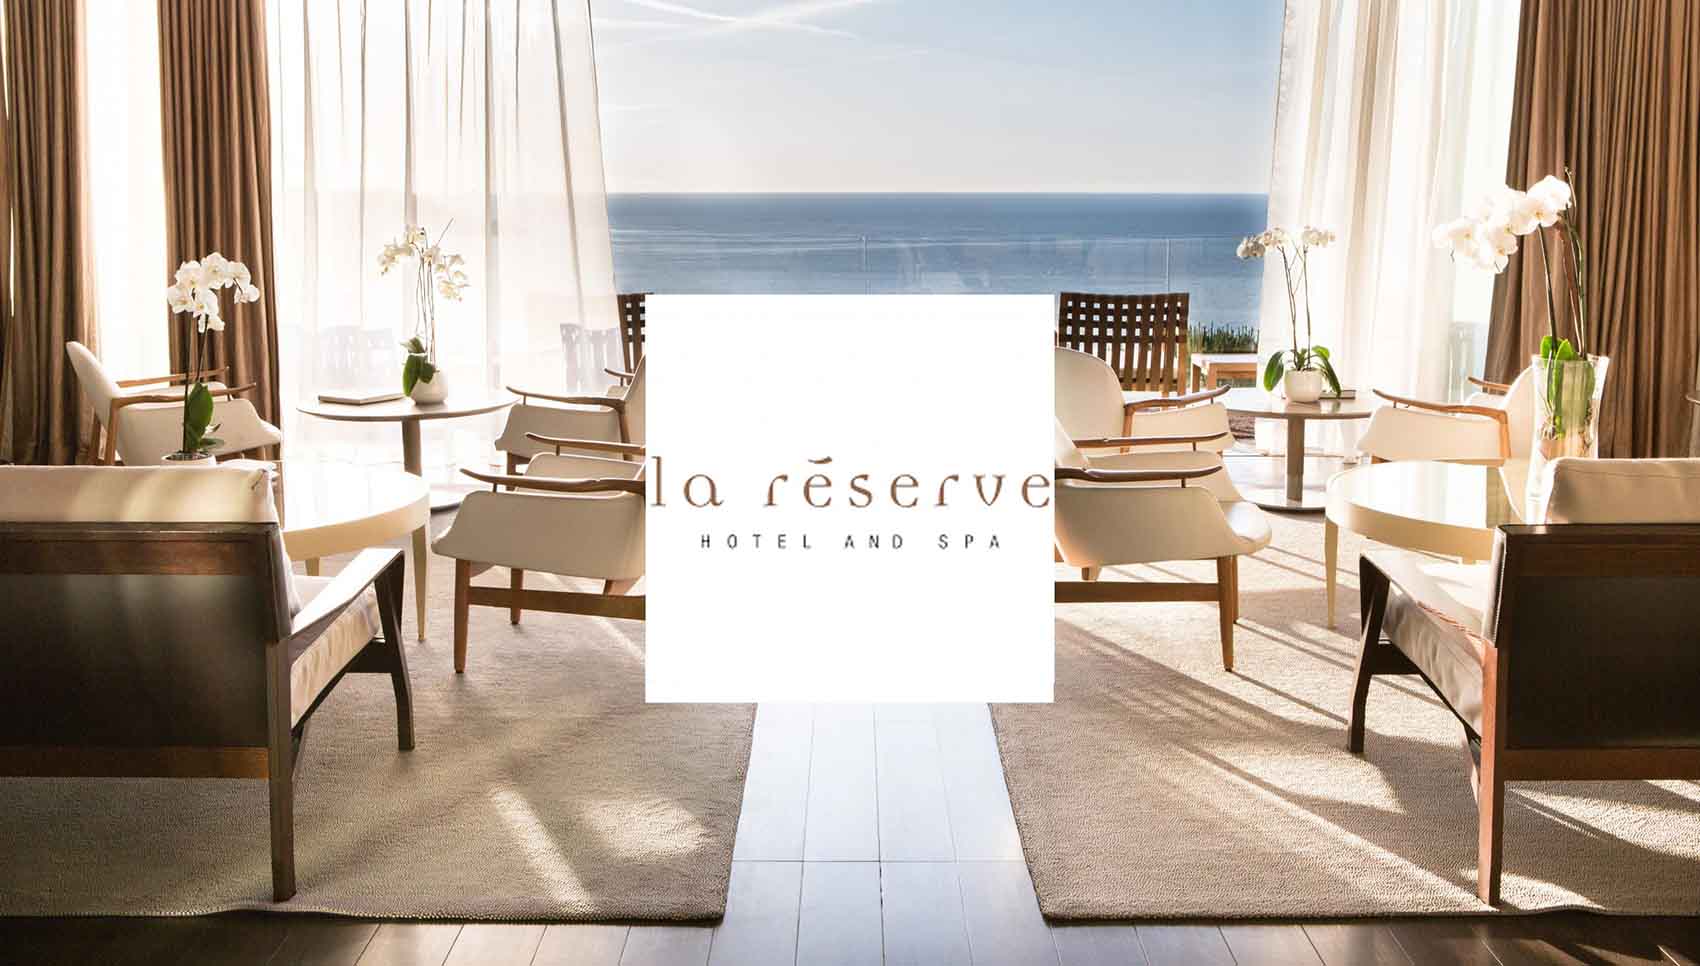 La Reserve Hotel and Spa